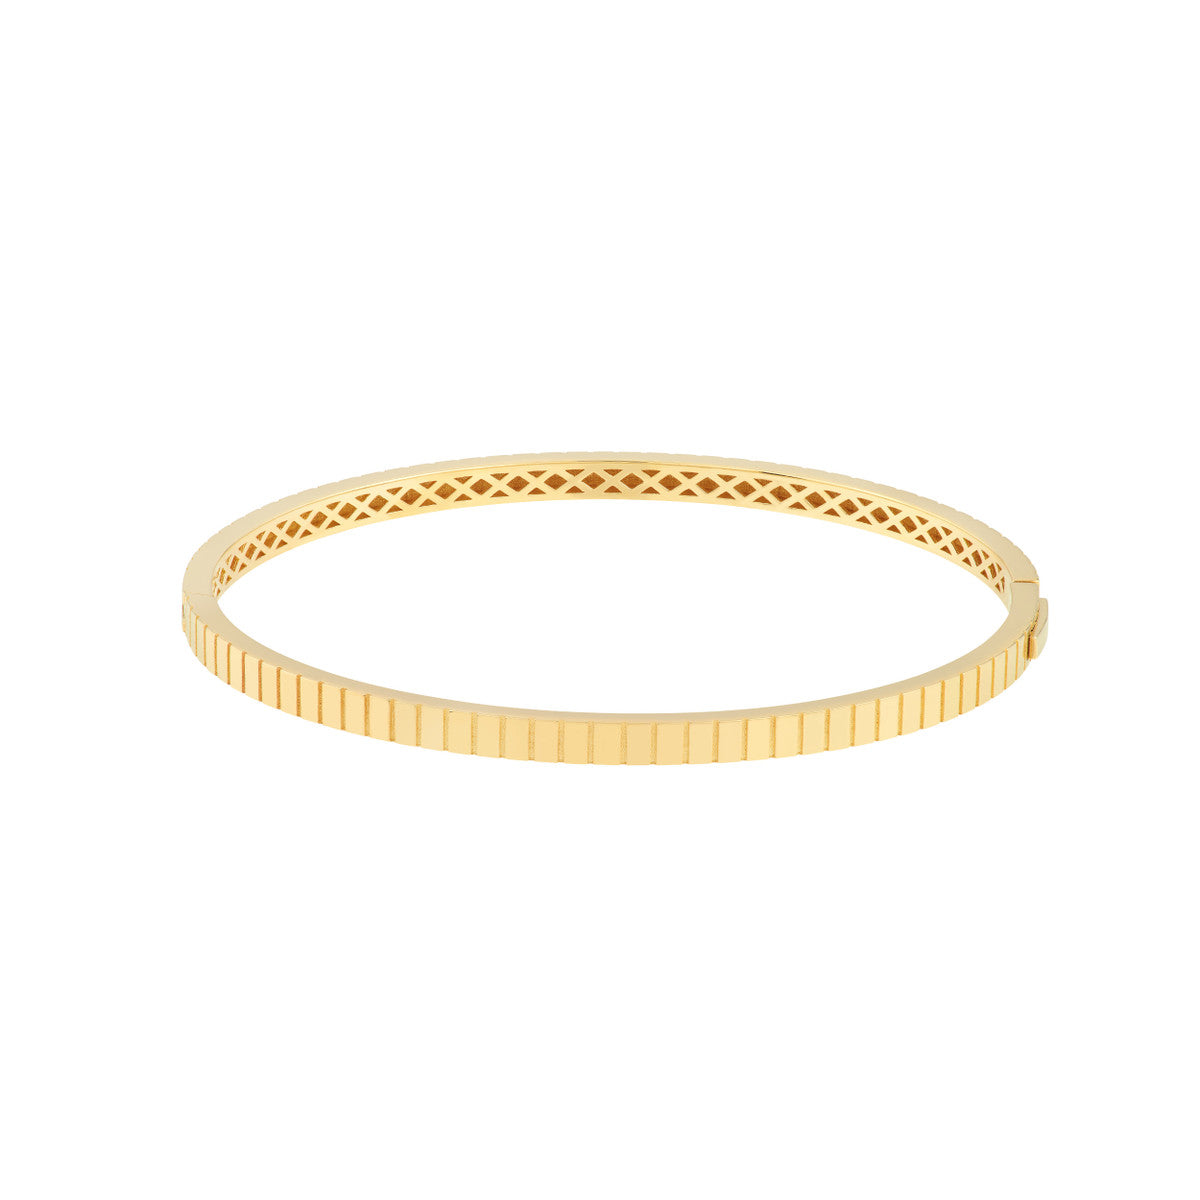 Woven Gold Bracelet - Gold Bracelets